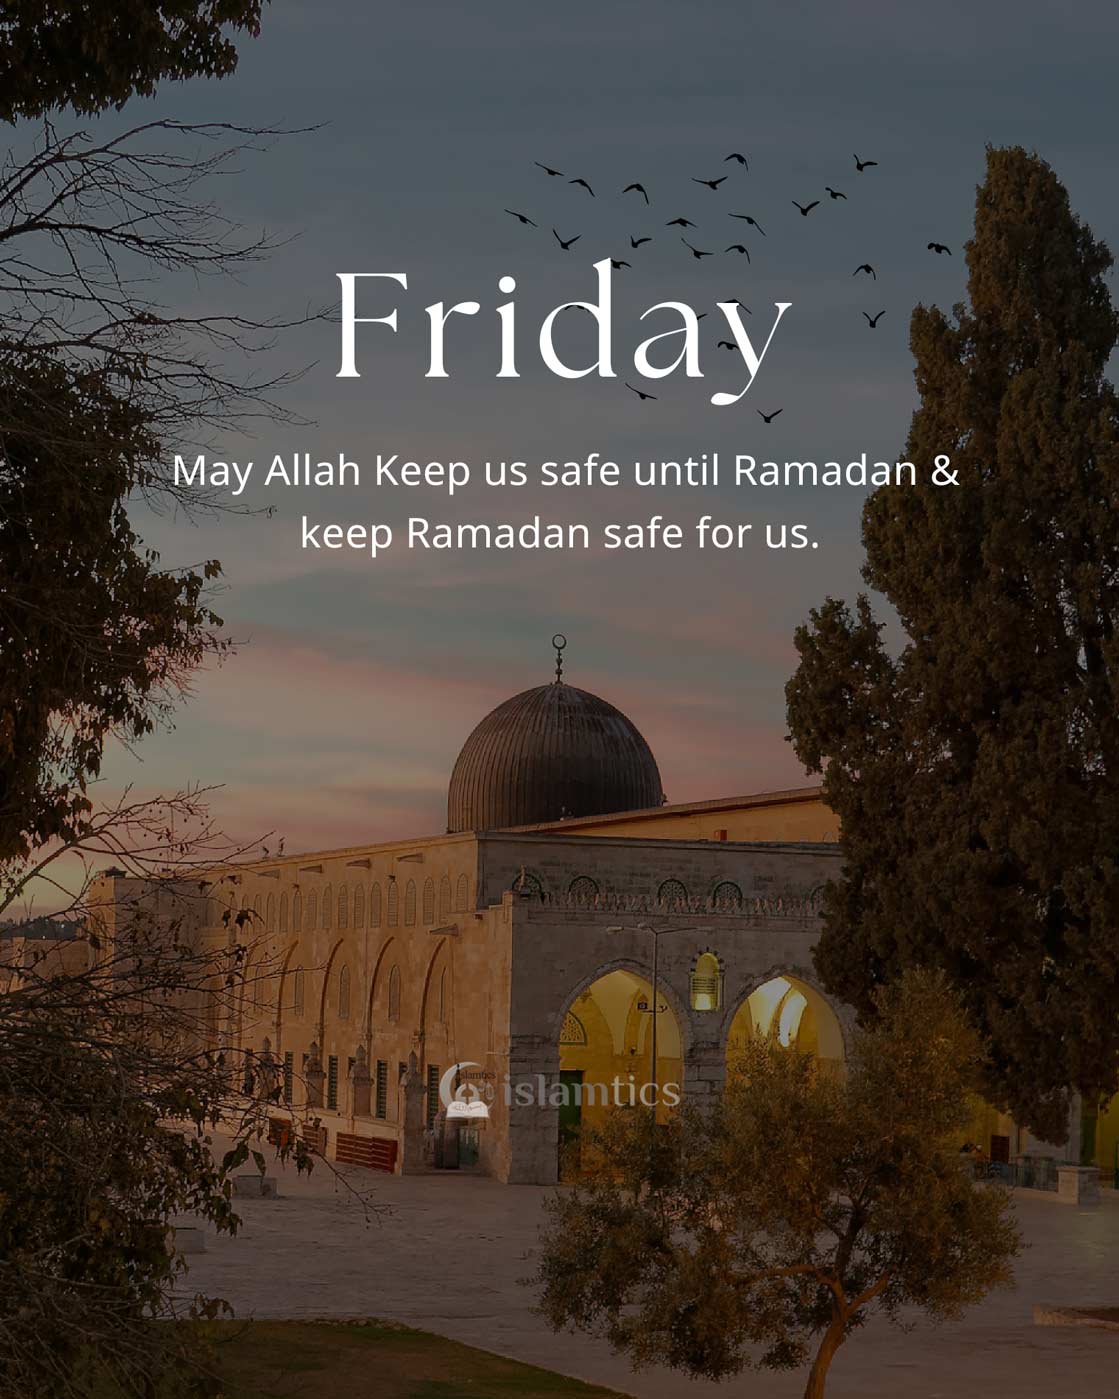  May Allah Keep us safe until Ramadan & keep Ramadan safe for us